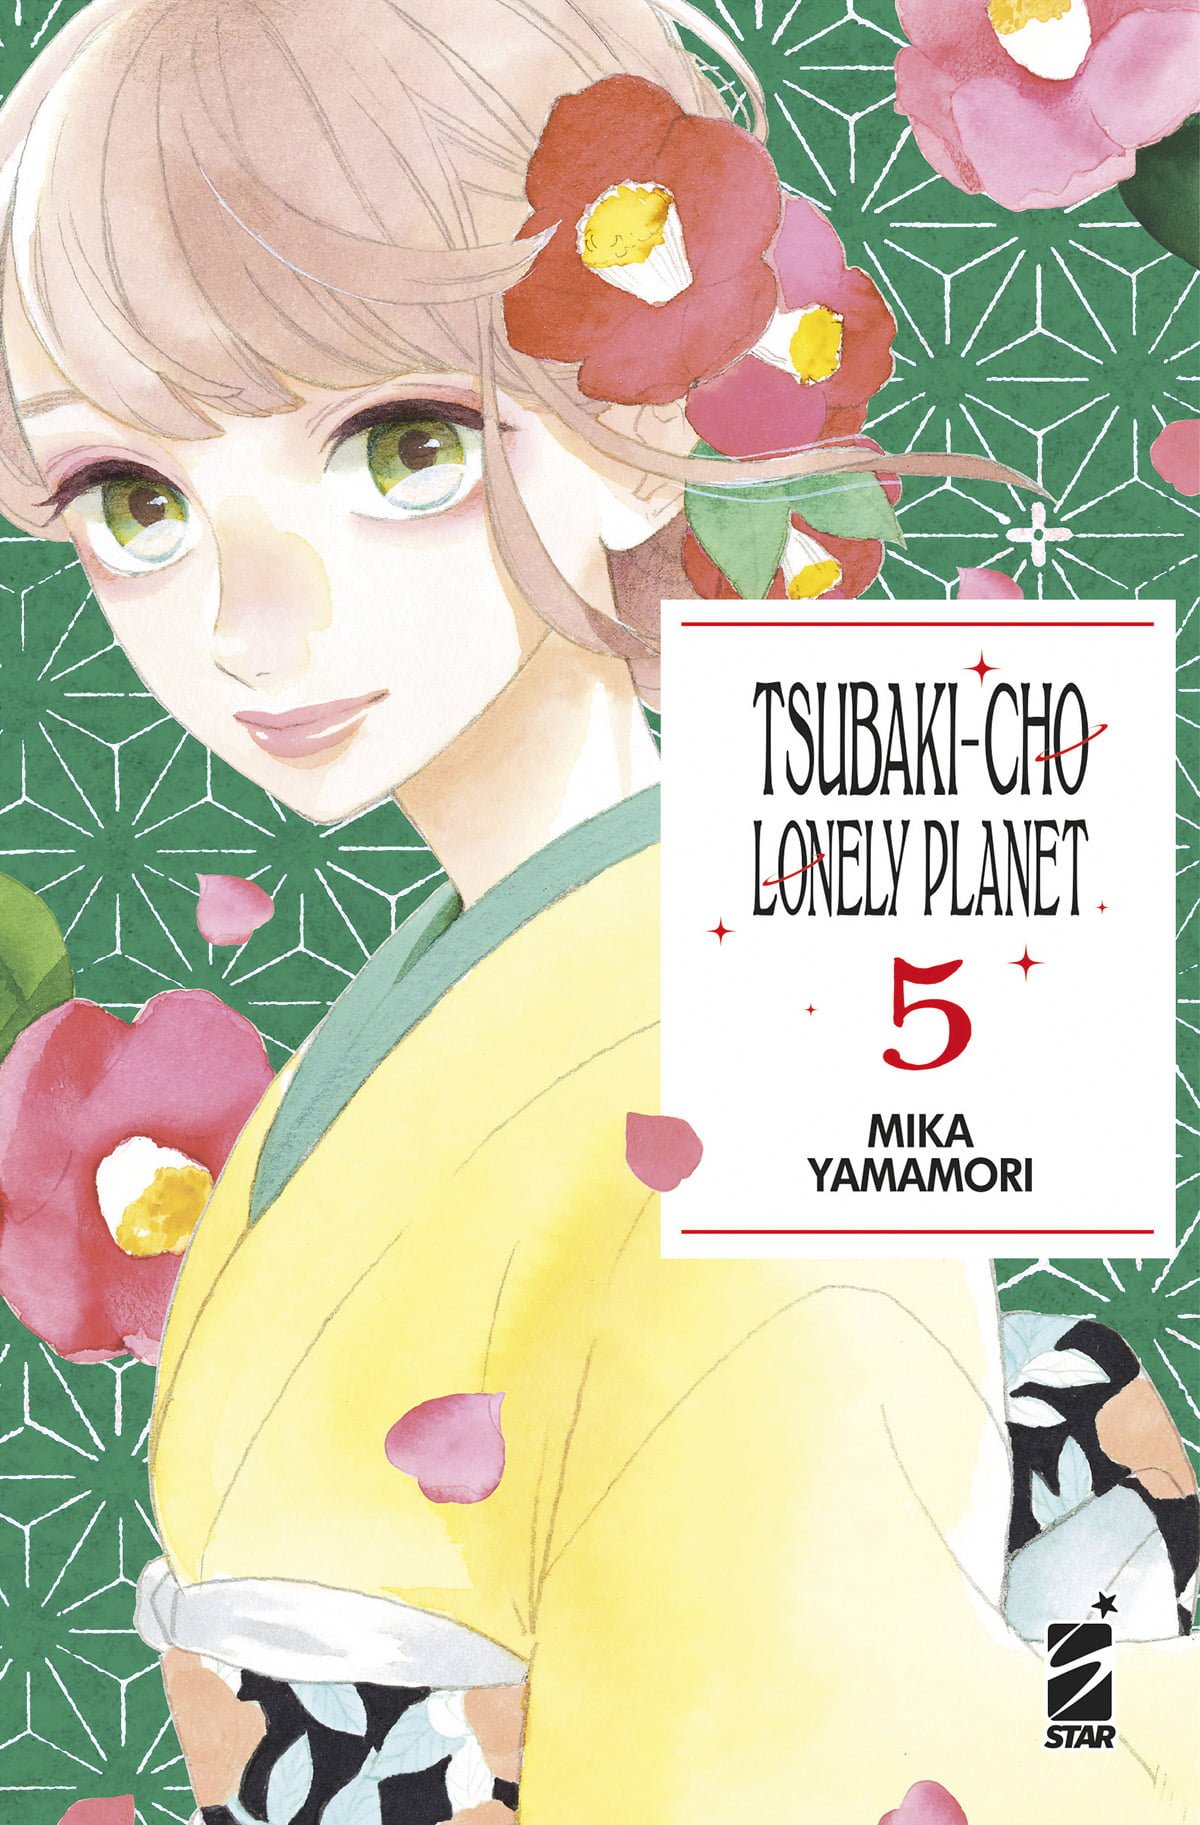 TSUBAKI-CHO LONELY PLANET NEW EDITION 5 DI 14 TURN OVER 263